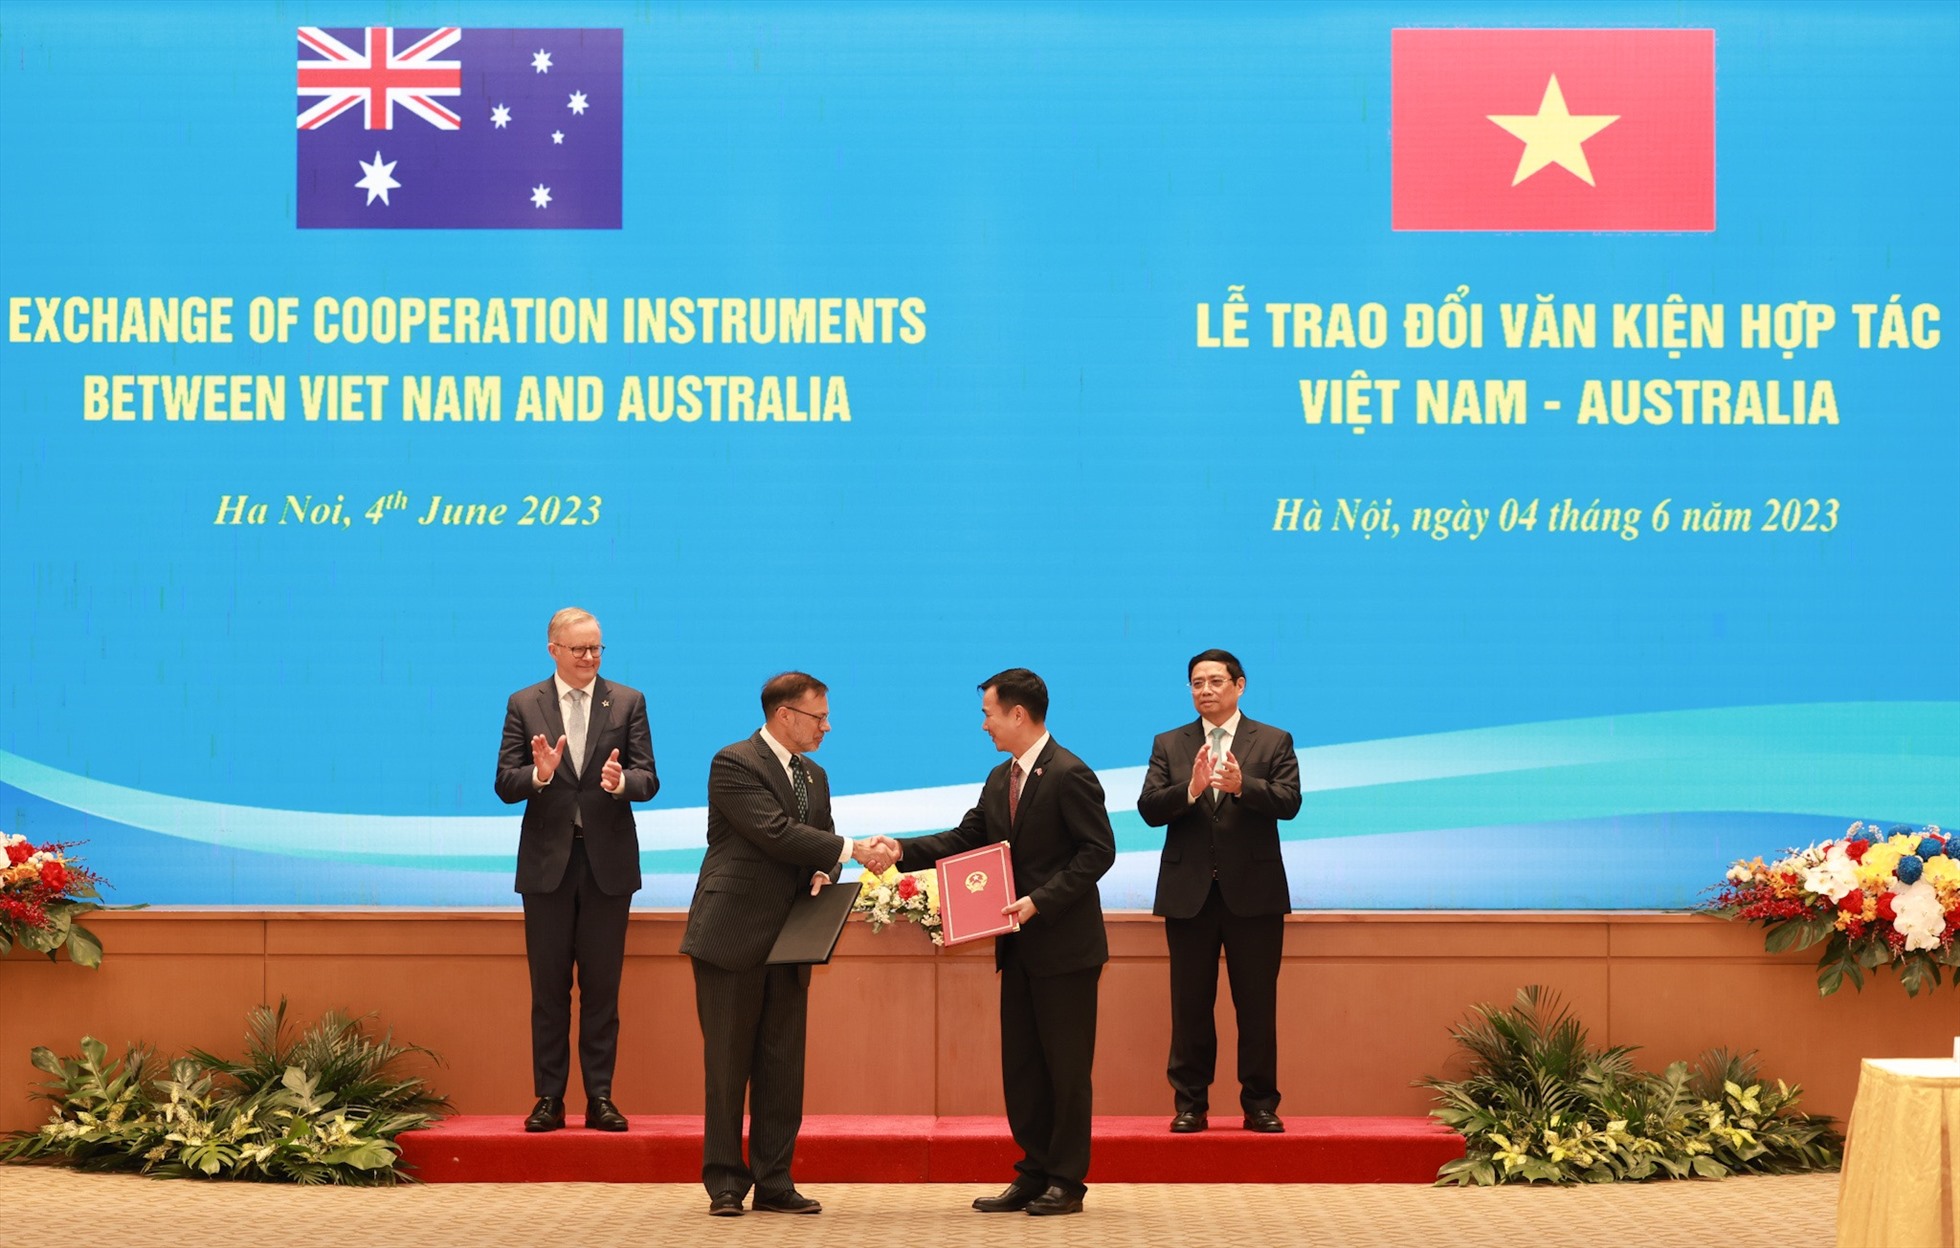 Hai Thủ tướng chứng kiến lễ trao đổi văn kiện hợp tác giữa hai nước. Ảnh: Hải Nguyễn